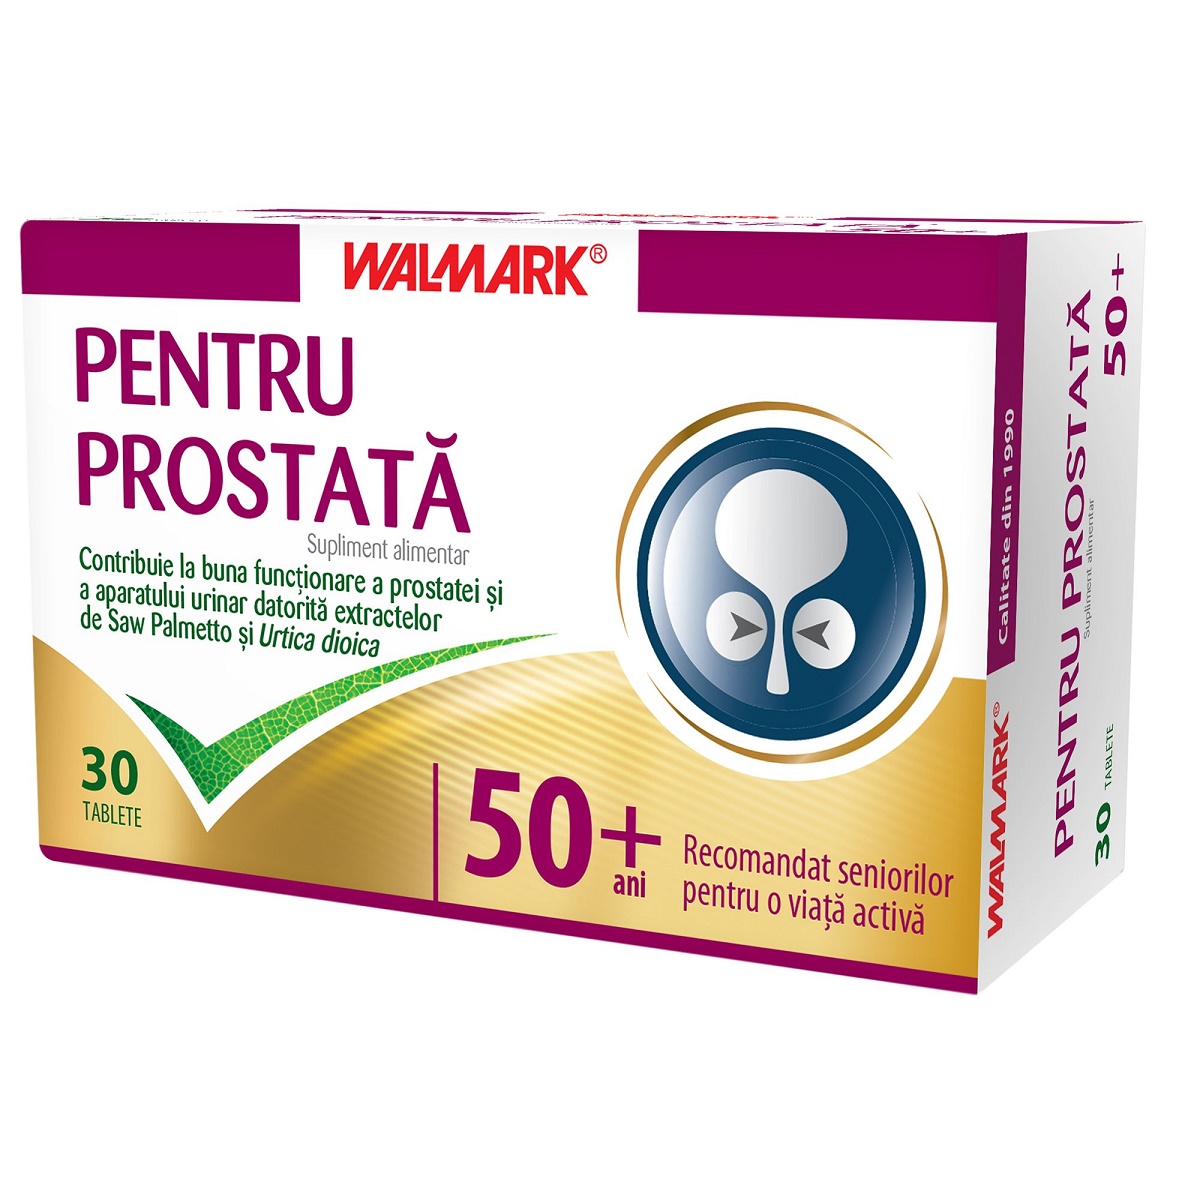 prostatitis és funduk